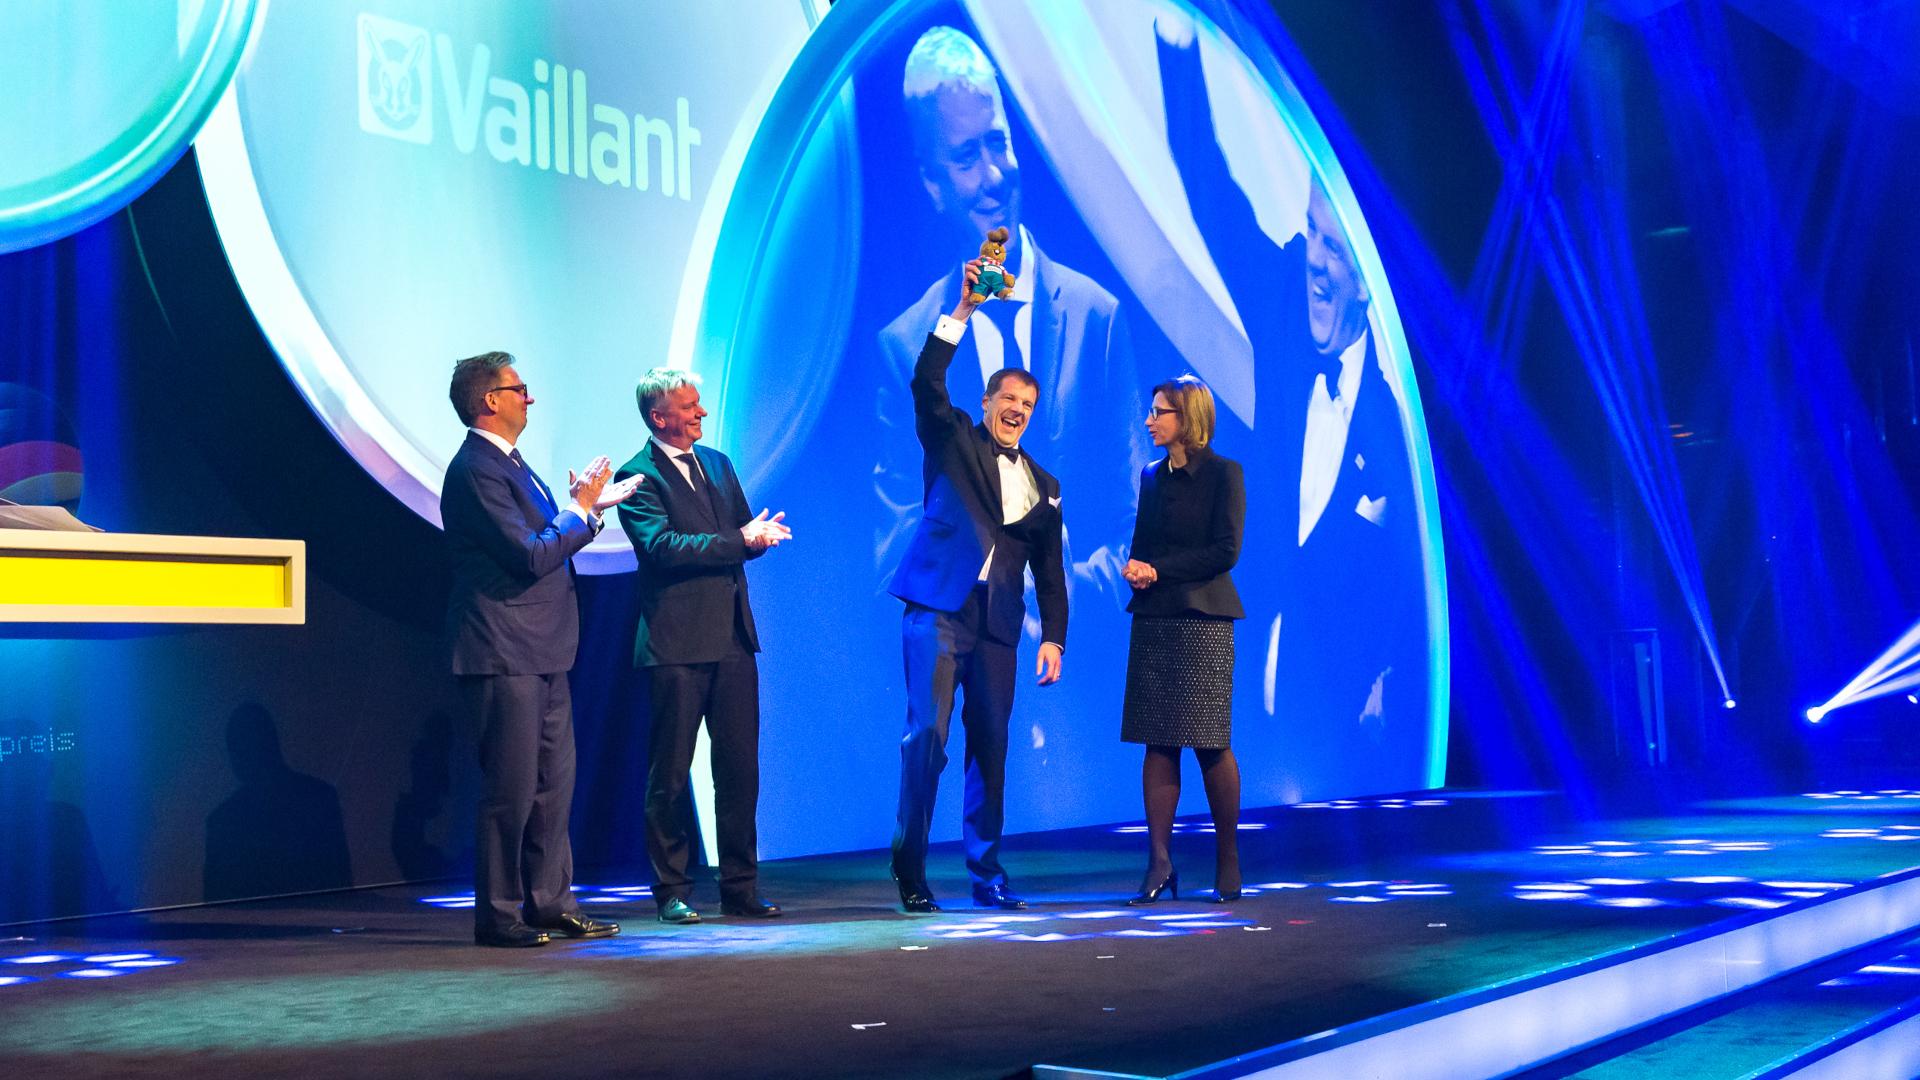 Vuonna 2015 Vaillant voitti saksalaisen kestävän kehityksen palkinnon suuryritysten kategoriassa.